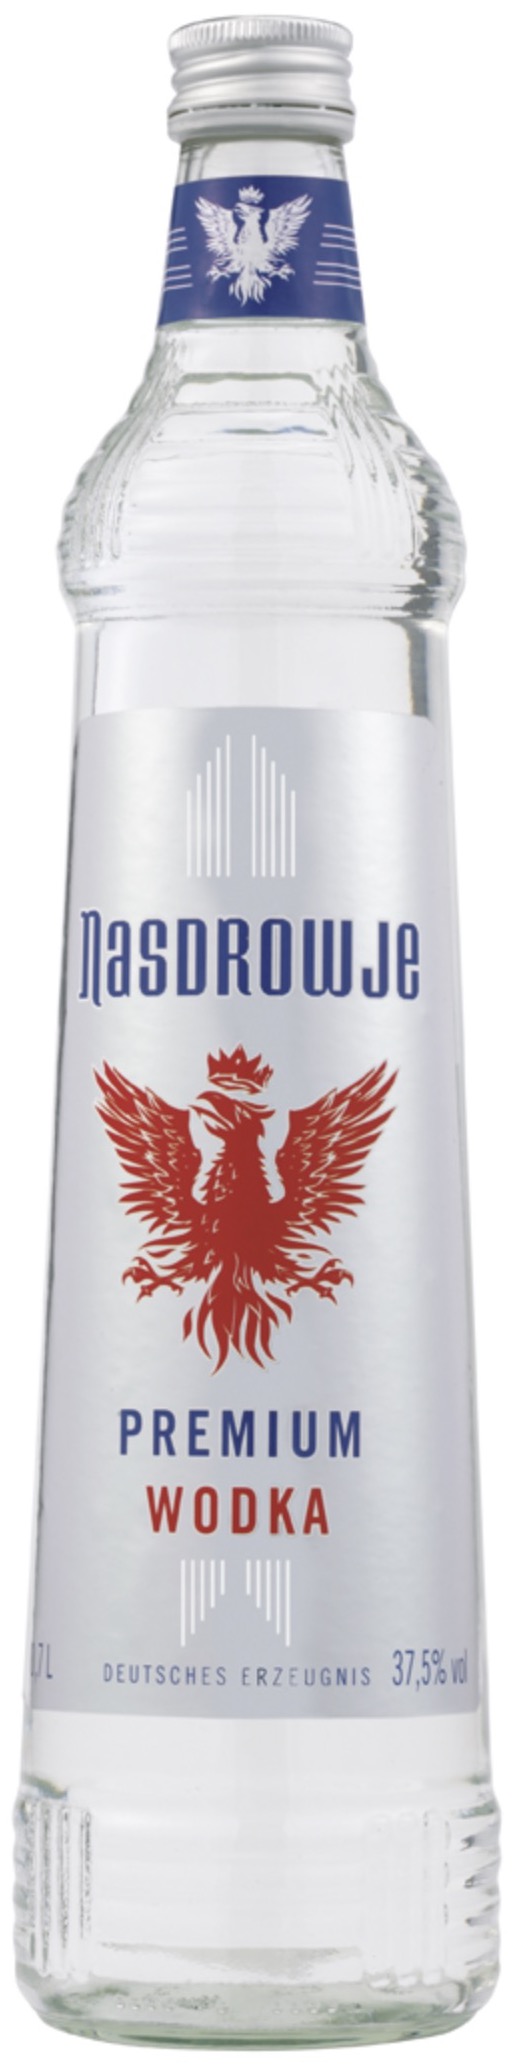 Zubrowka Wodka Bison Grass 37,5% vol. 0,5L | 5900343005272